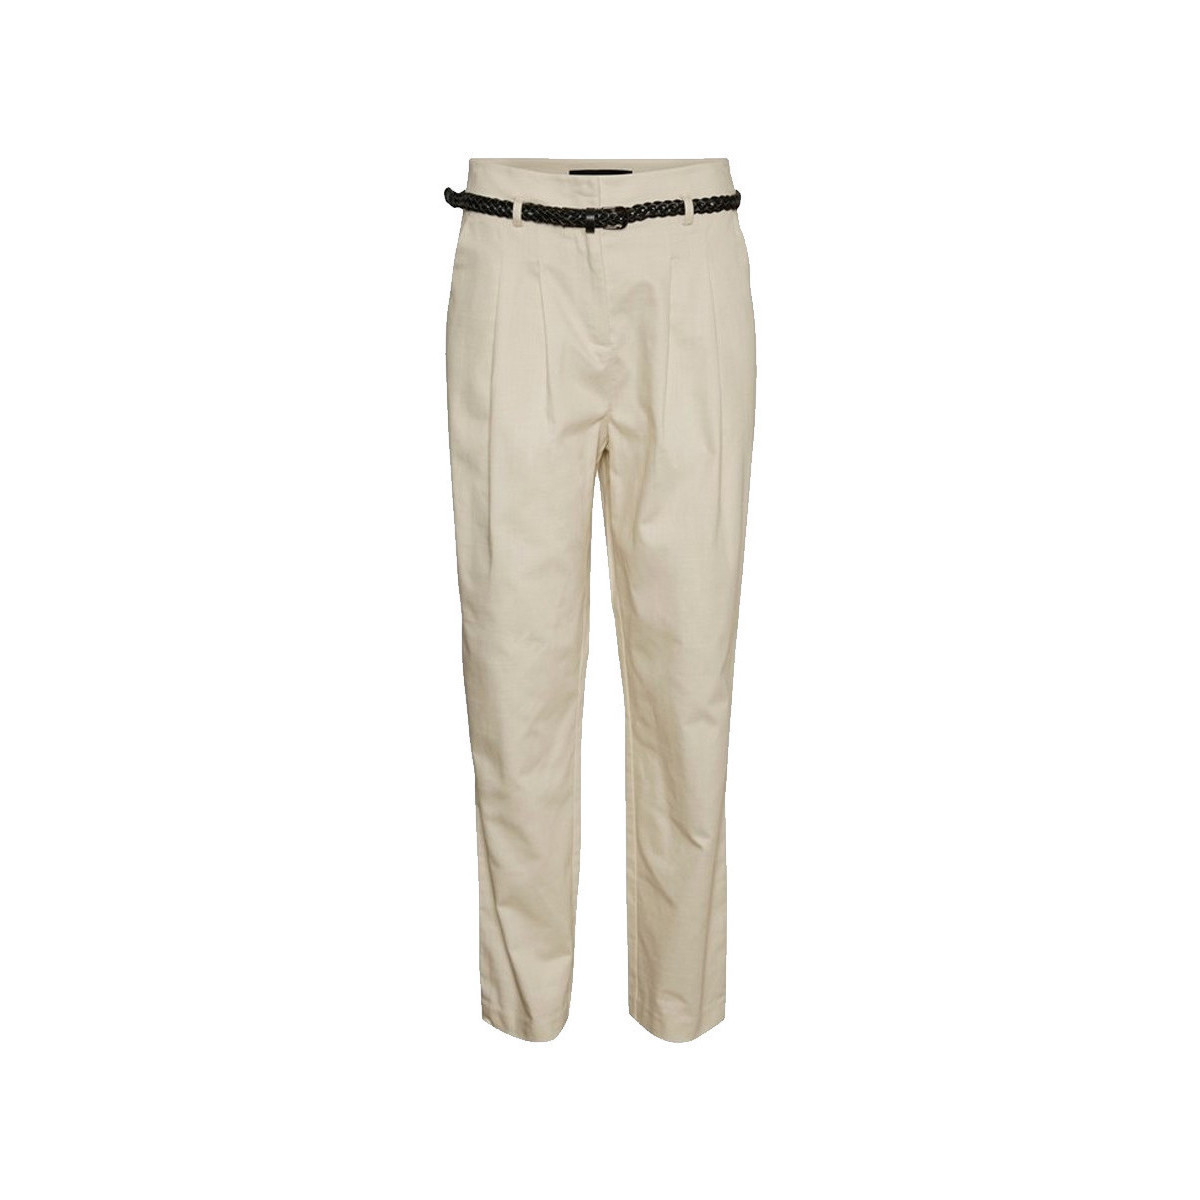 Abbigliamento Donna Pantaloni Vero Moda 10247088 Bianco